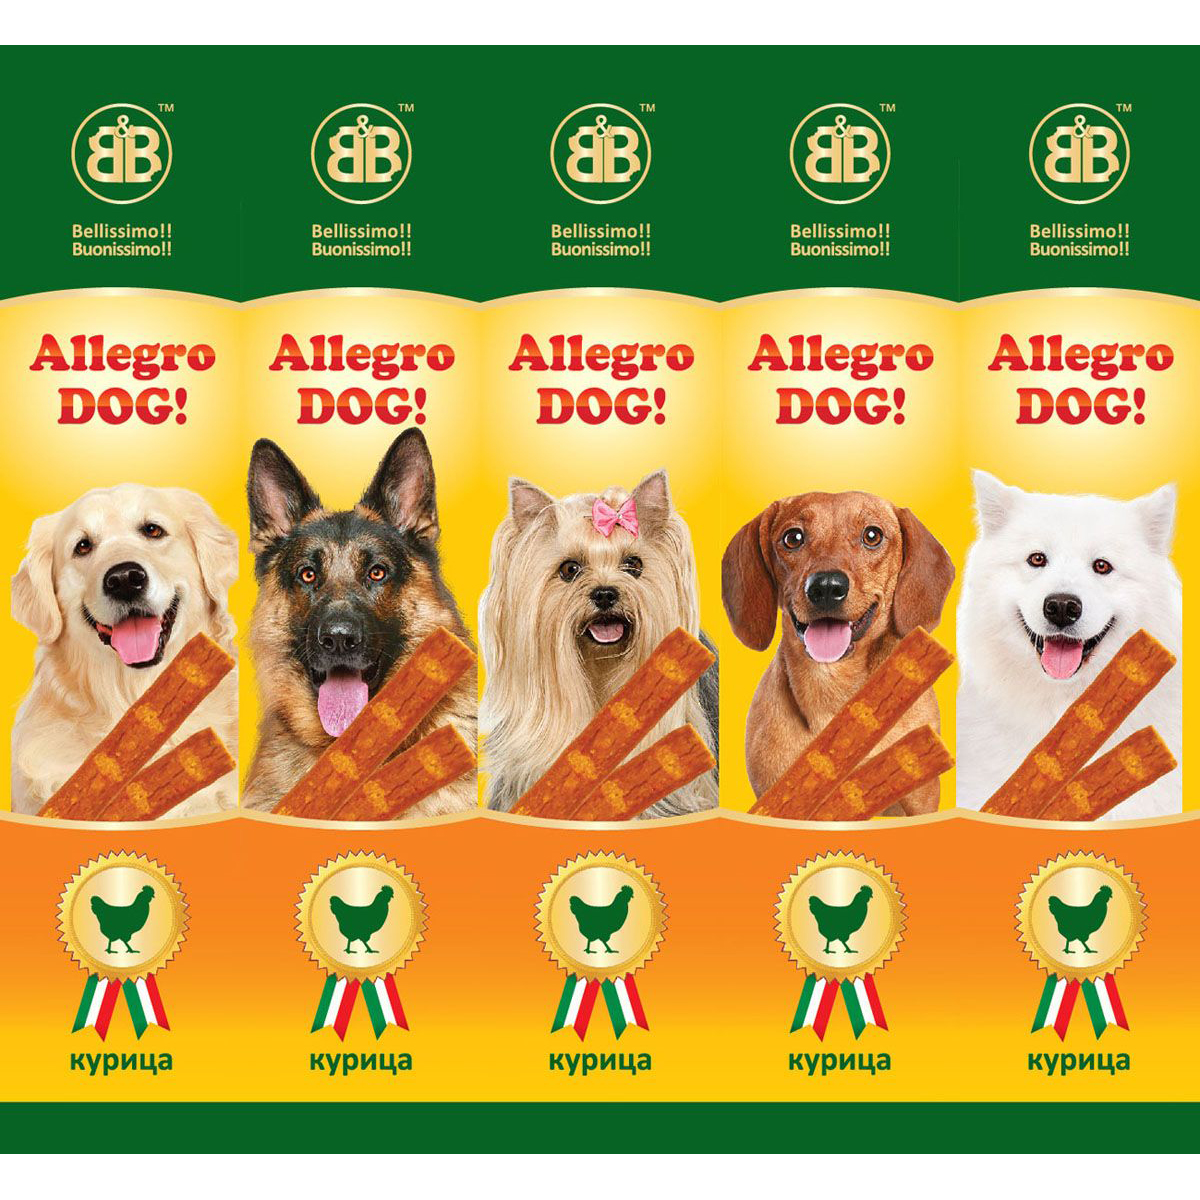 фото Лакомство для собак b&b allegro dog жевательные колбаски с курицей 5x10 г